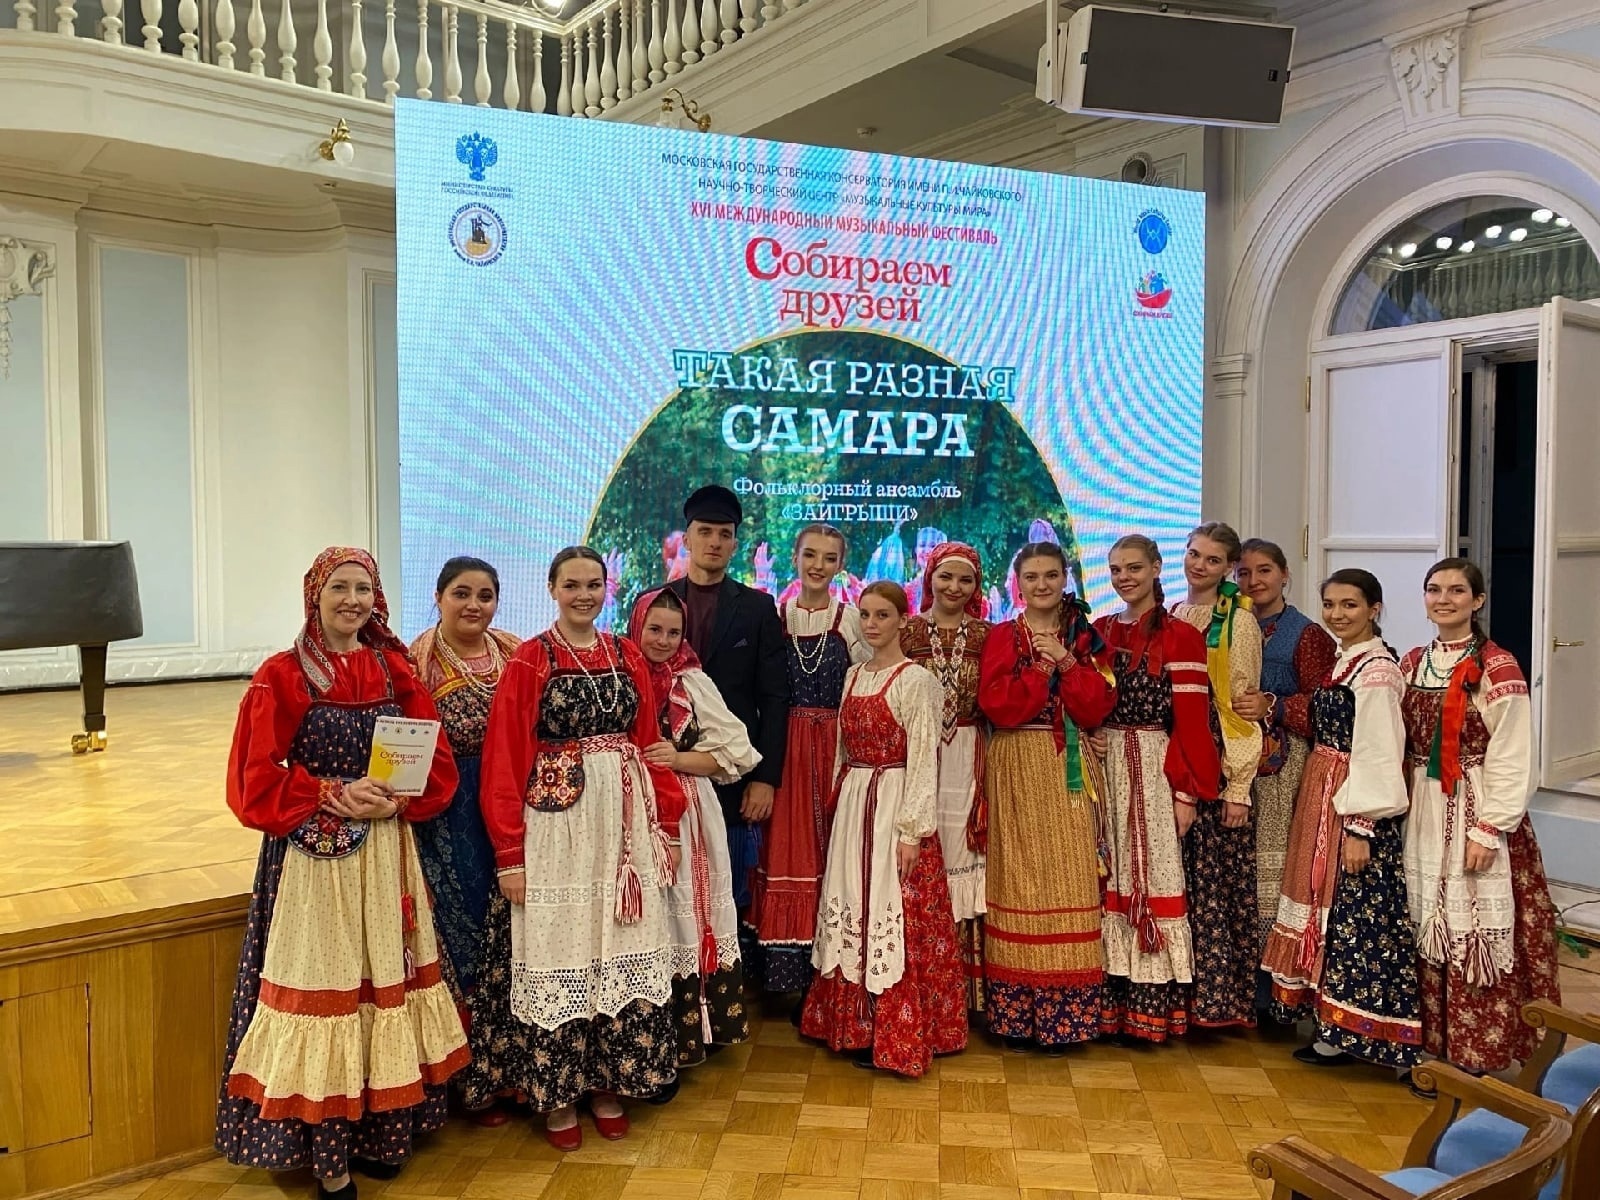 Самарский ансамбль «Заигрыши» выступил в Московской консерватории с песнями, записанными во время фольклорных экспедиций